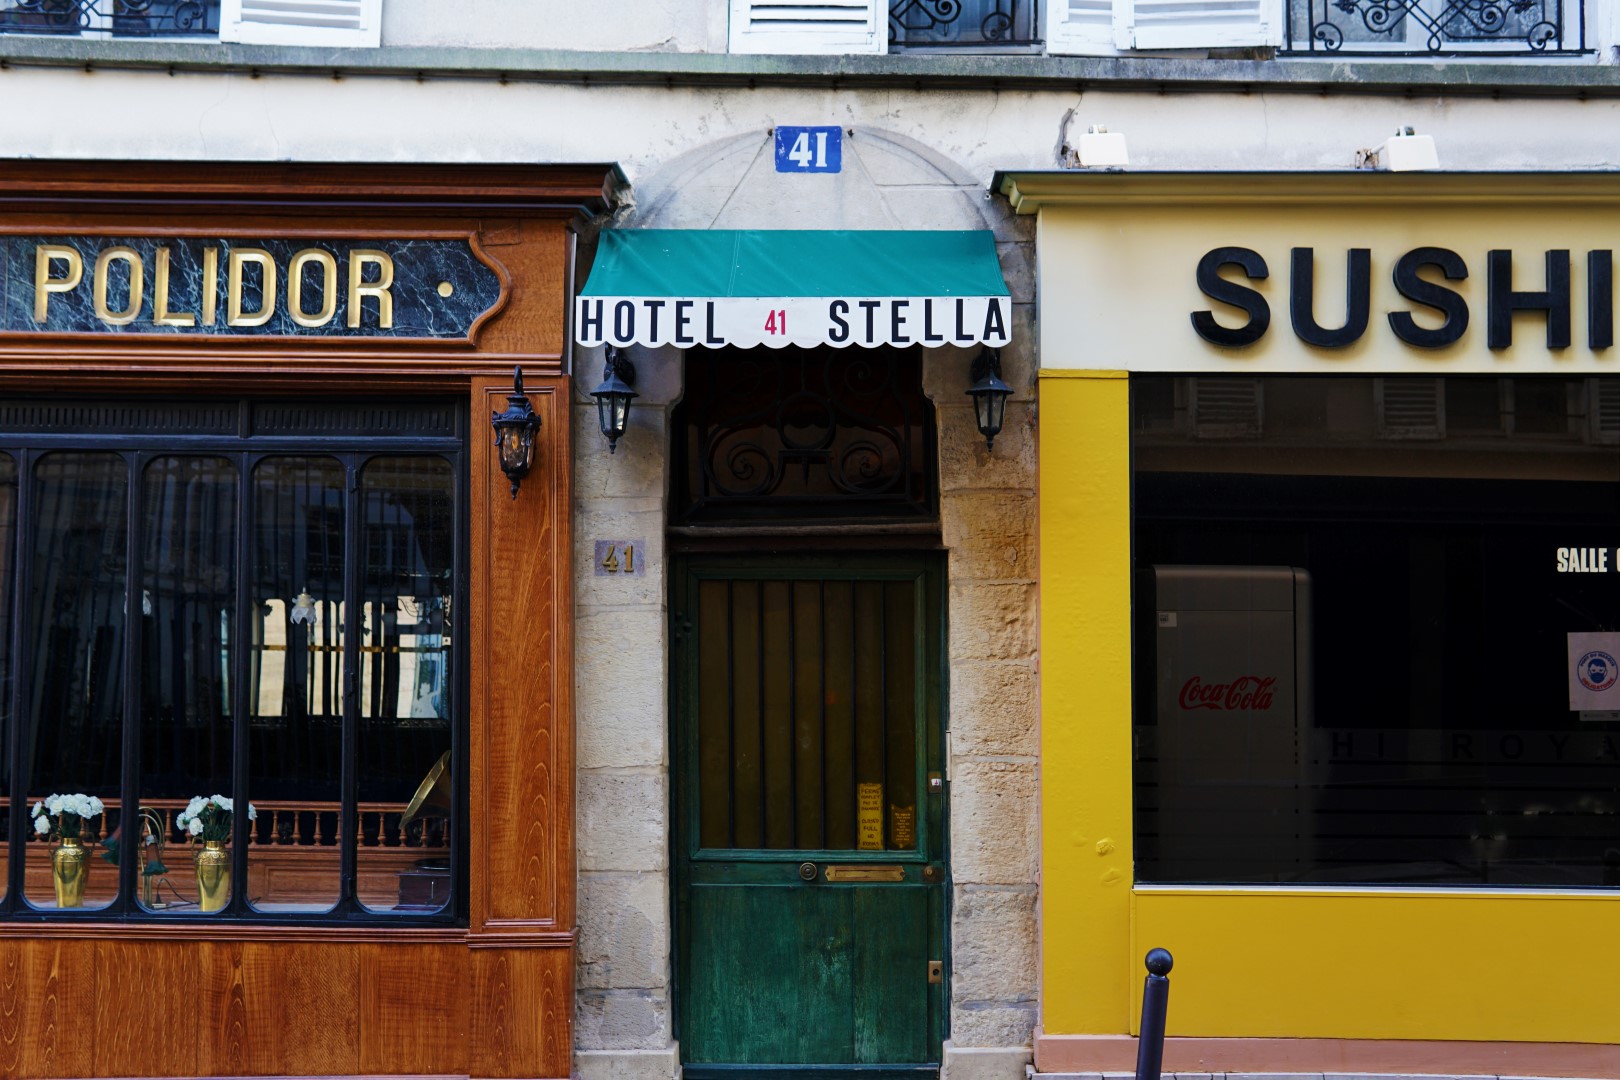 rue Monsieur le Prince - Une balade autour d'Odéon - 5e et 6e arrondissements de Paris